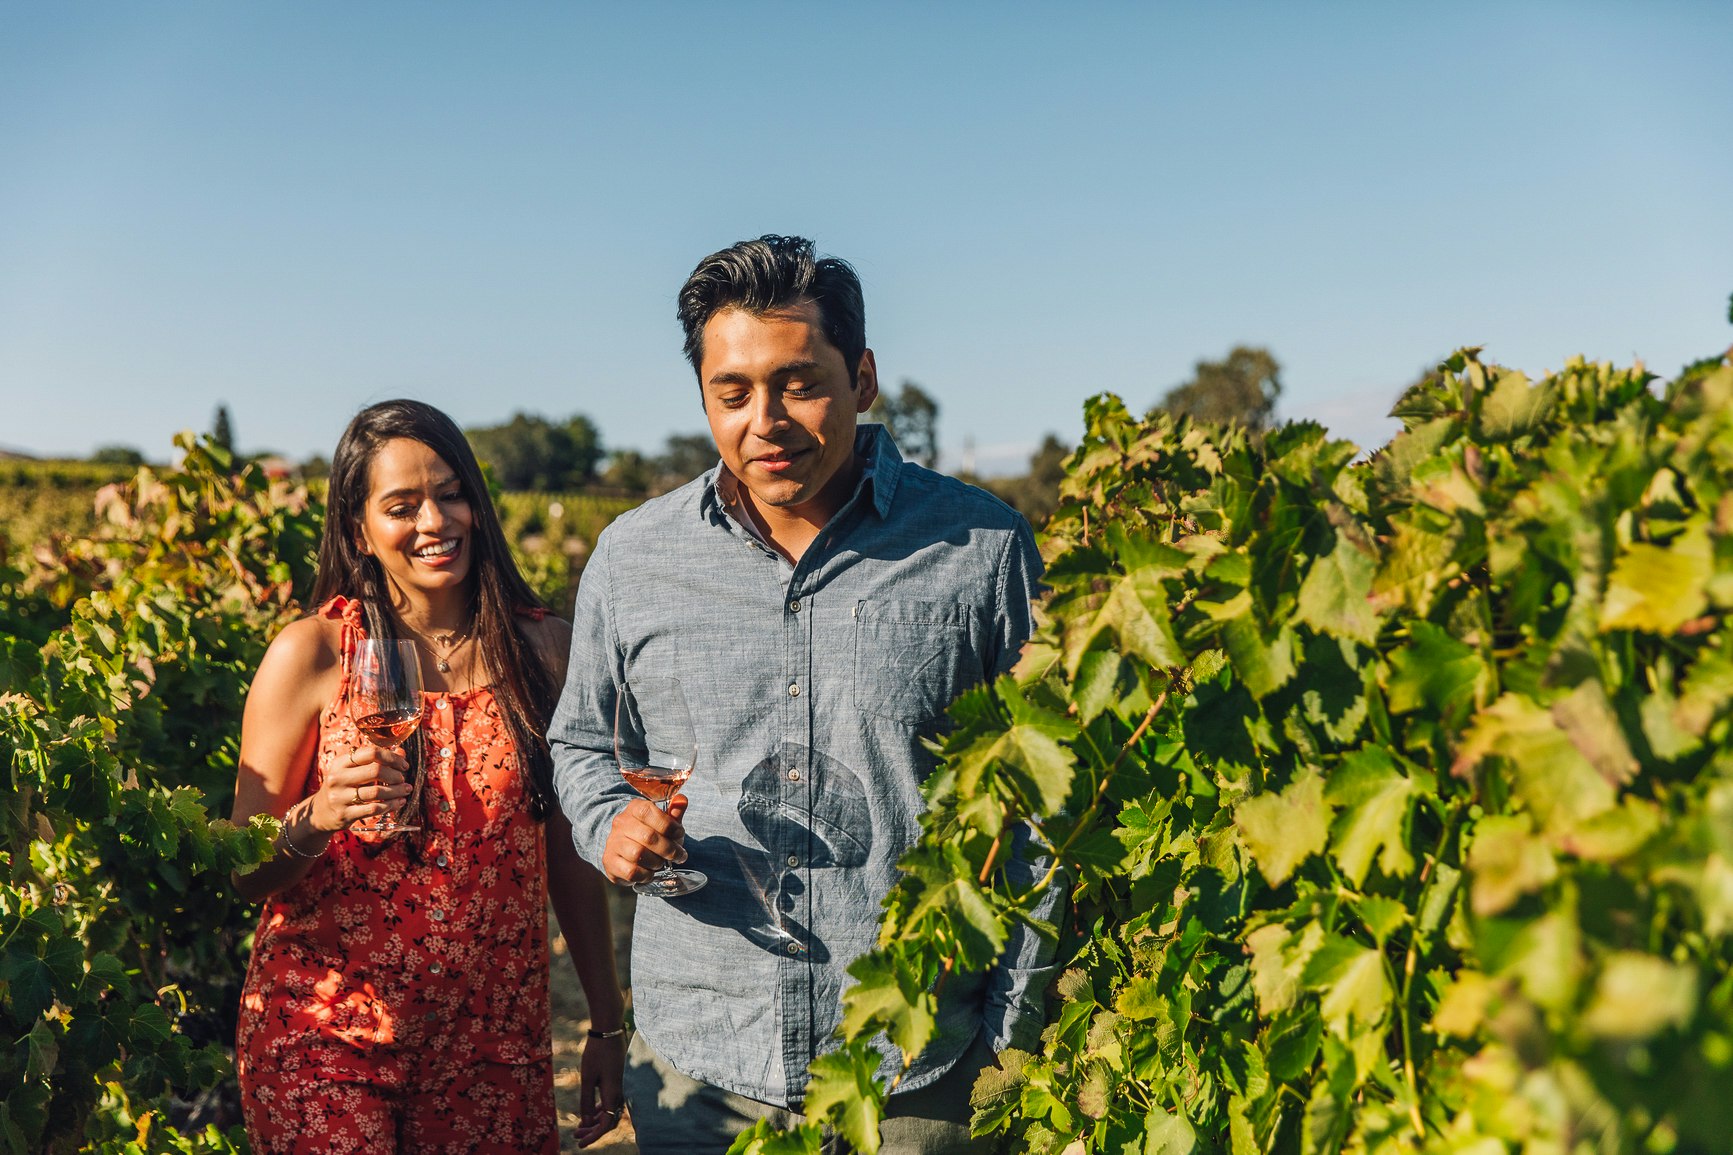 A young couple walk through a vineyard in California